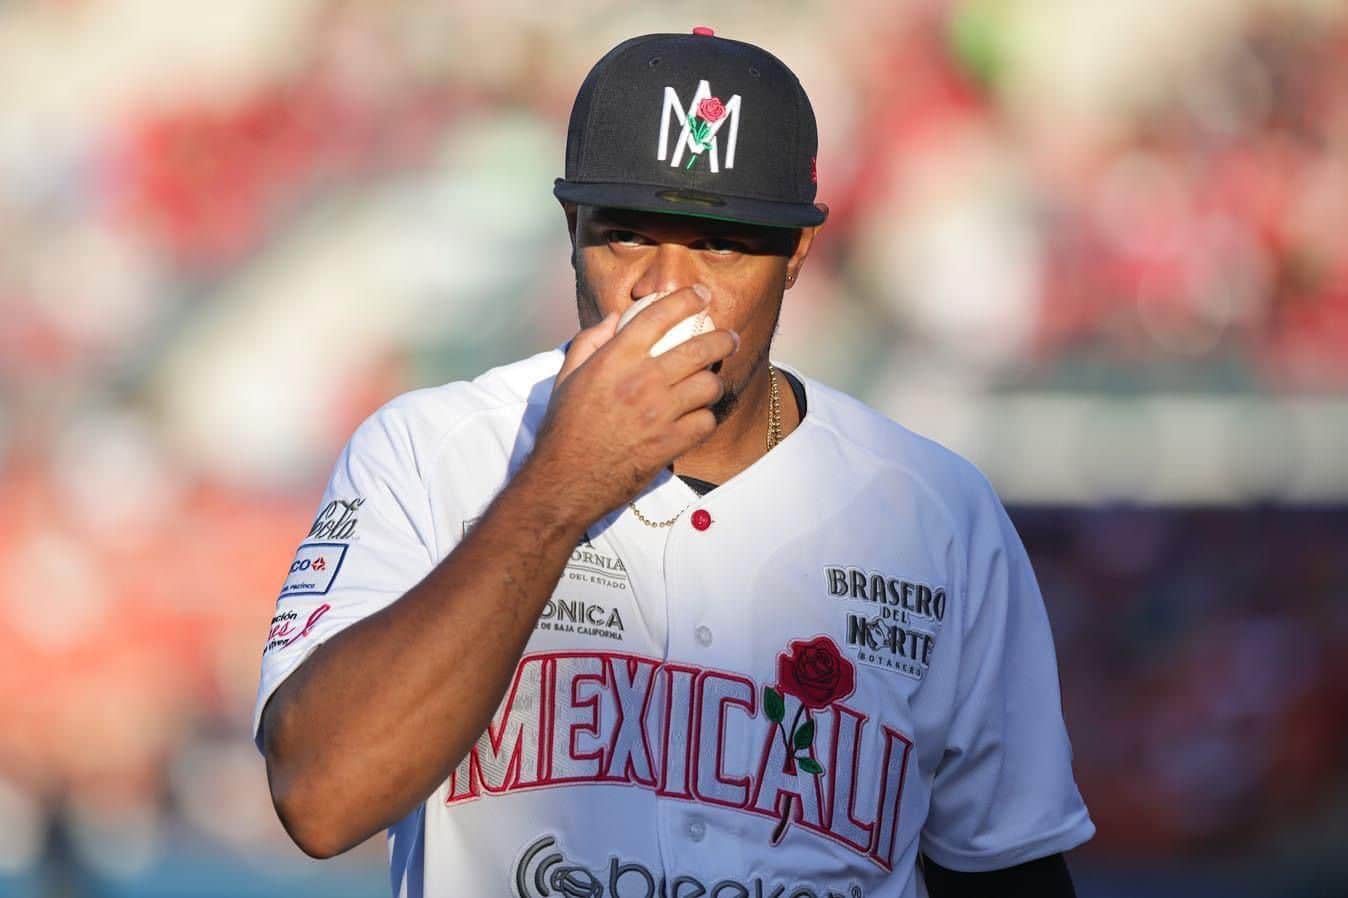 Adjuntos en la nota: Jugador-beisbol-venados-Mazatlán-Águilas-Mexicali |  Línea Directa